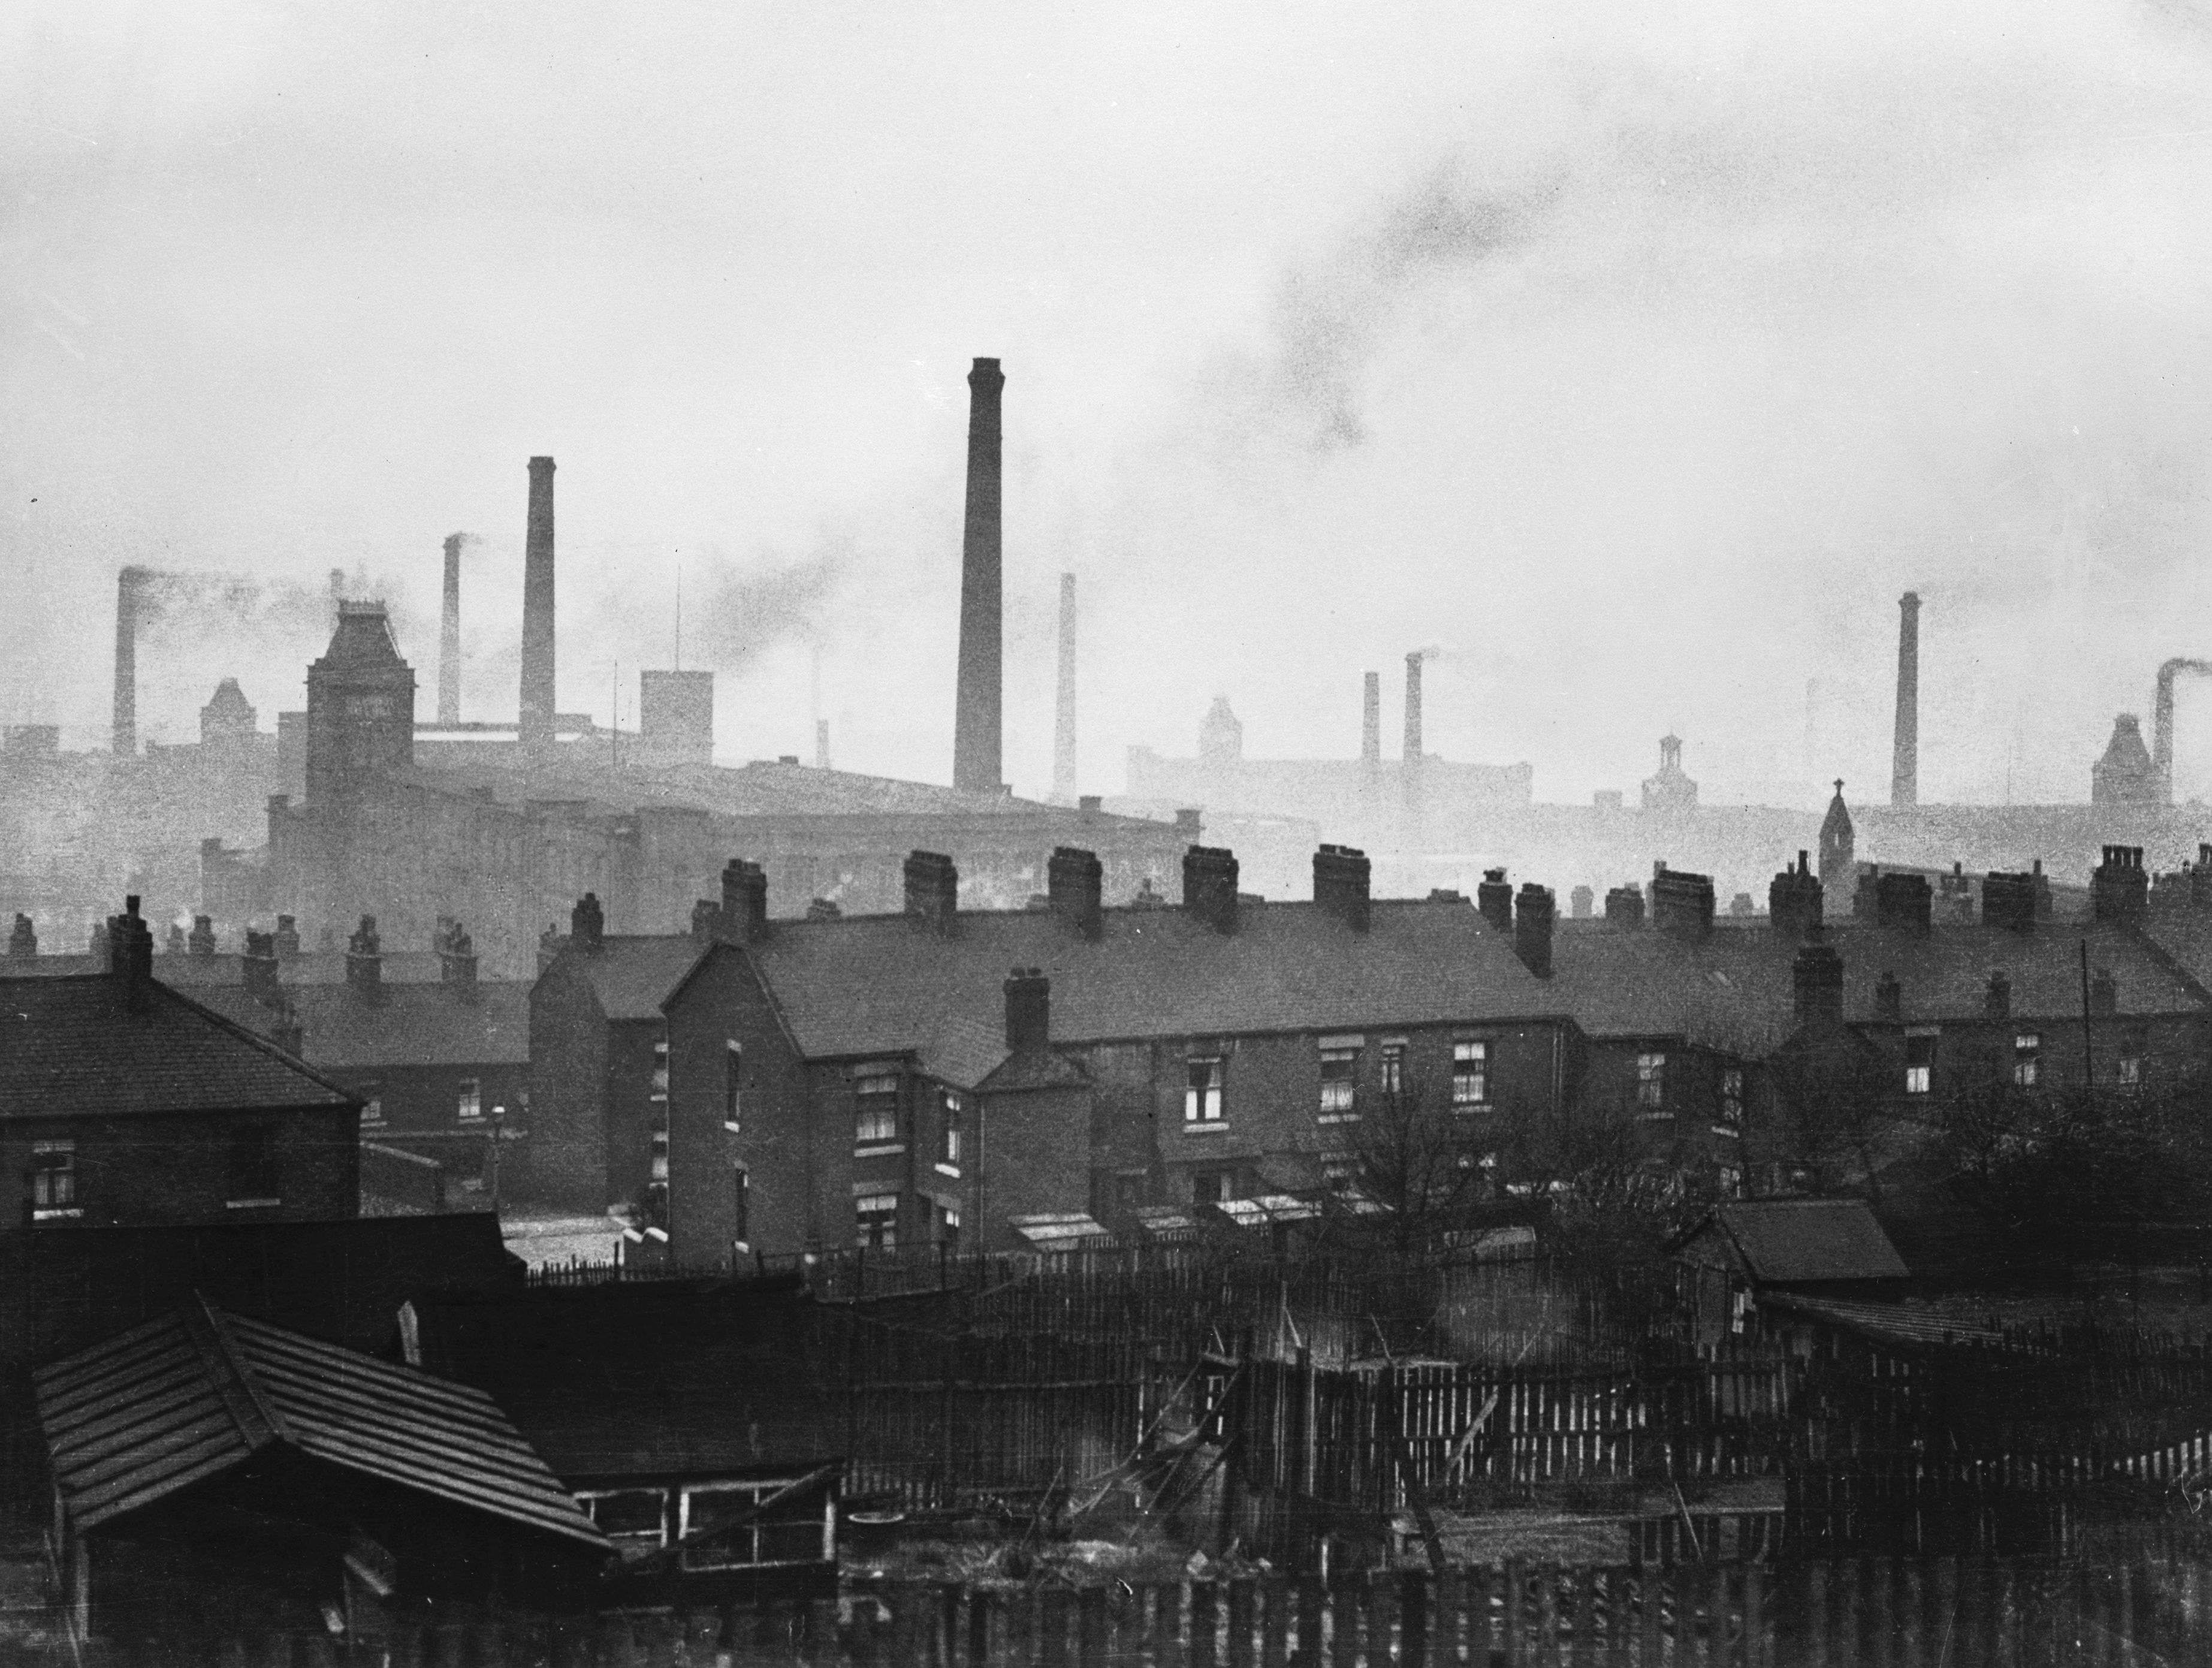 Industrial town. Сталелитейный завод в Англии 19 века в Манчестере. Промышленная революция Англии 19 века. Сталелитейный завод в Англии 19 века. Великобритания 19 век заводы.